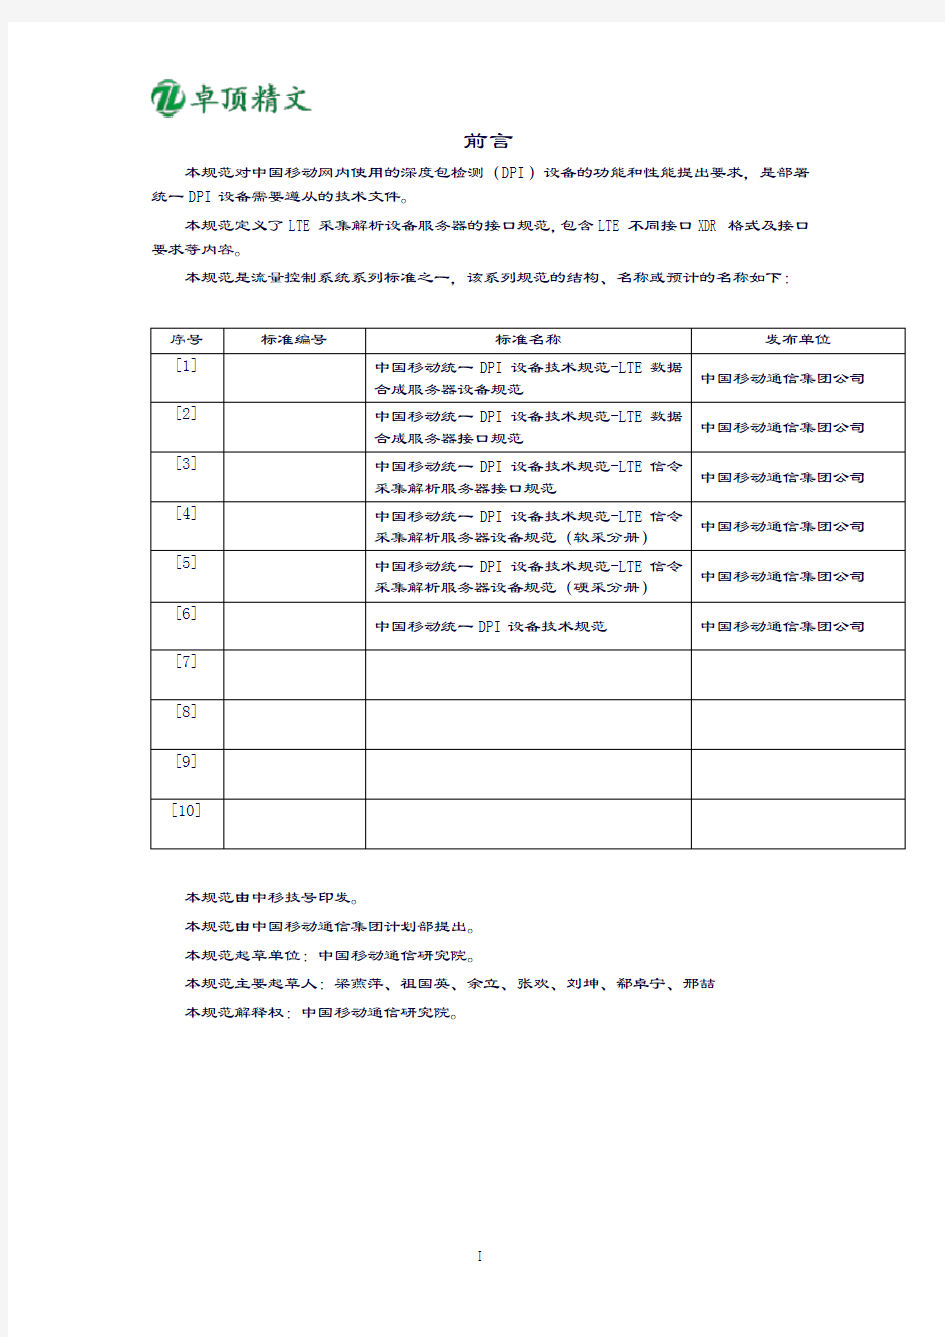 卓顶精文2019中国移动统一DPI设备技术规范-LTE信令采集解析服务器接口规范v2.0.9--LTE各接口XDR规范